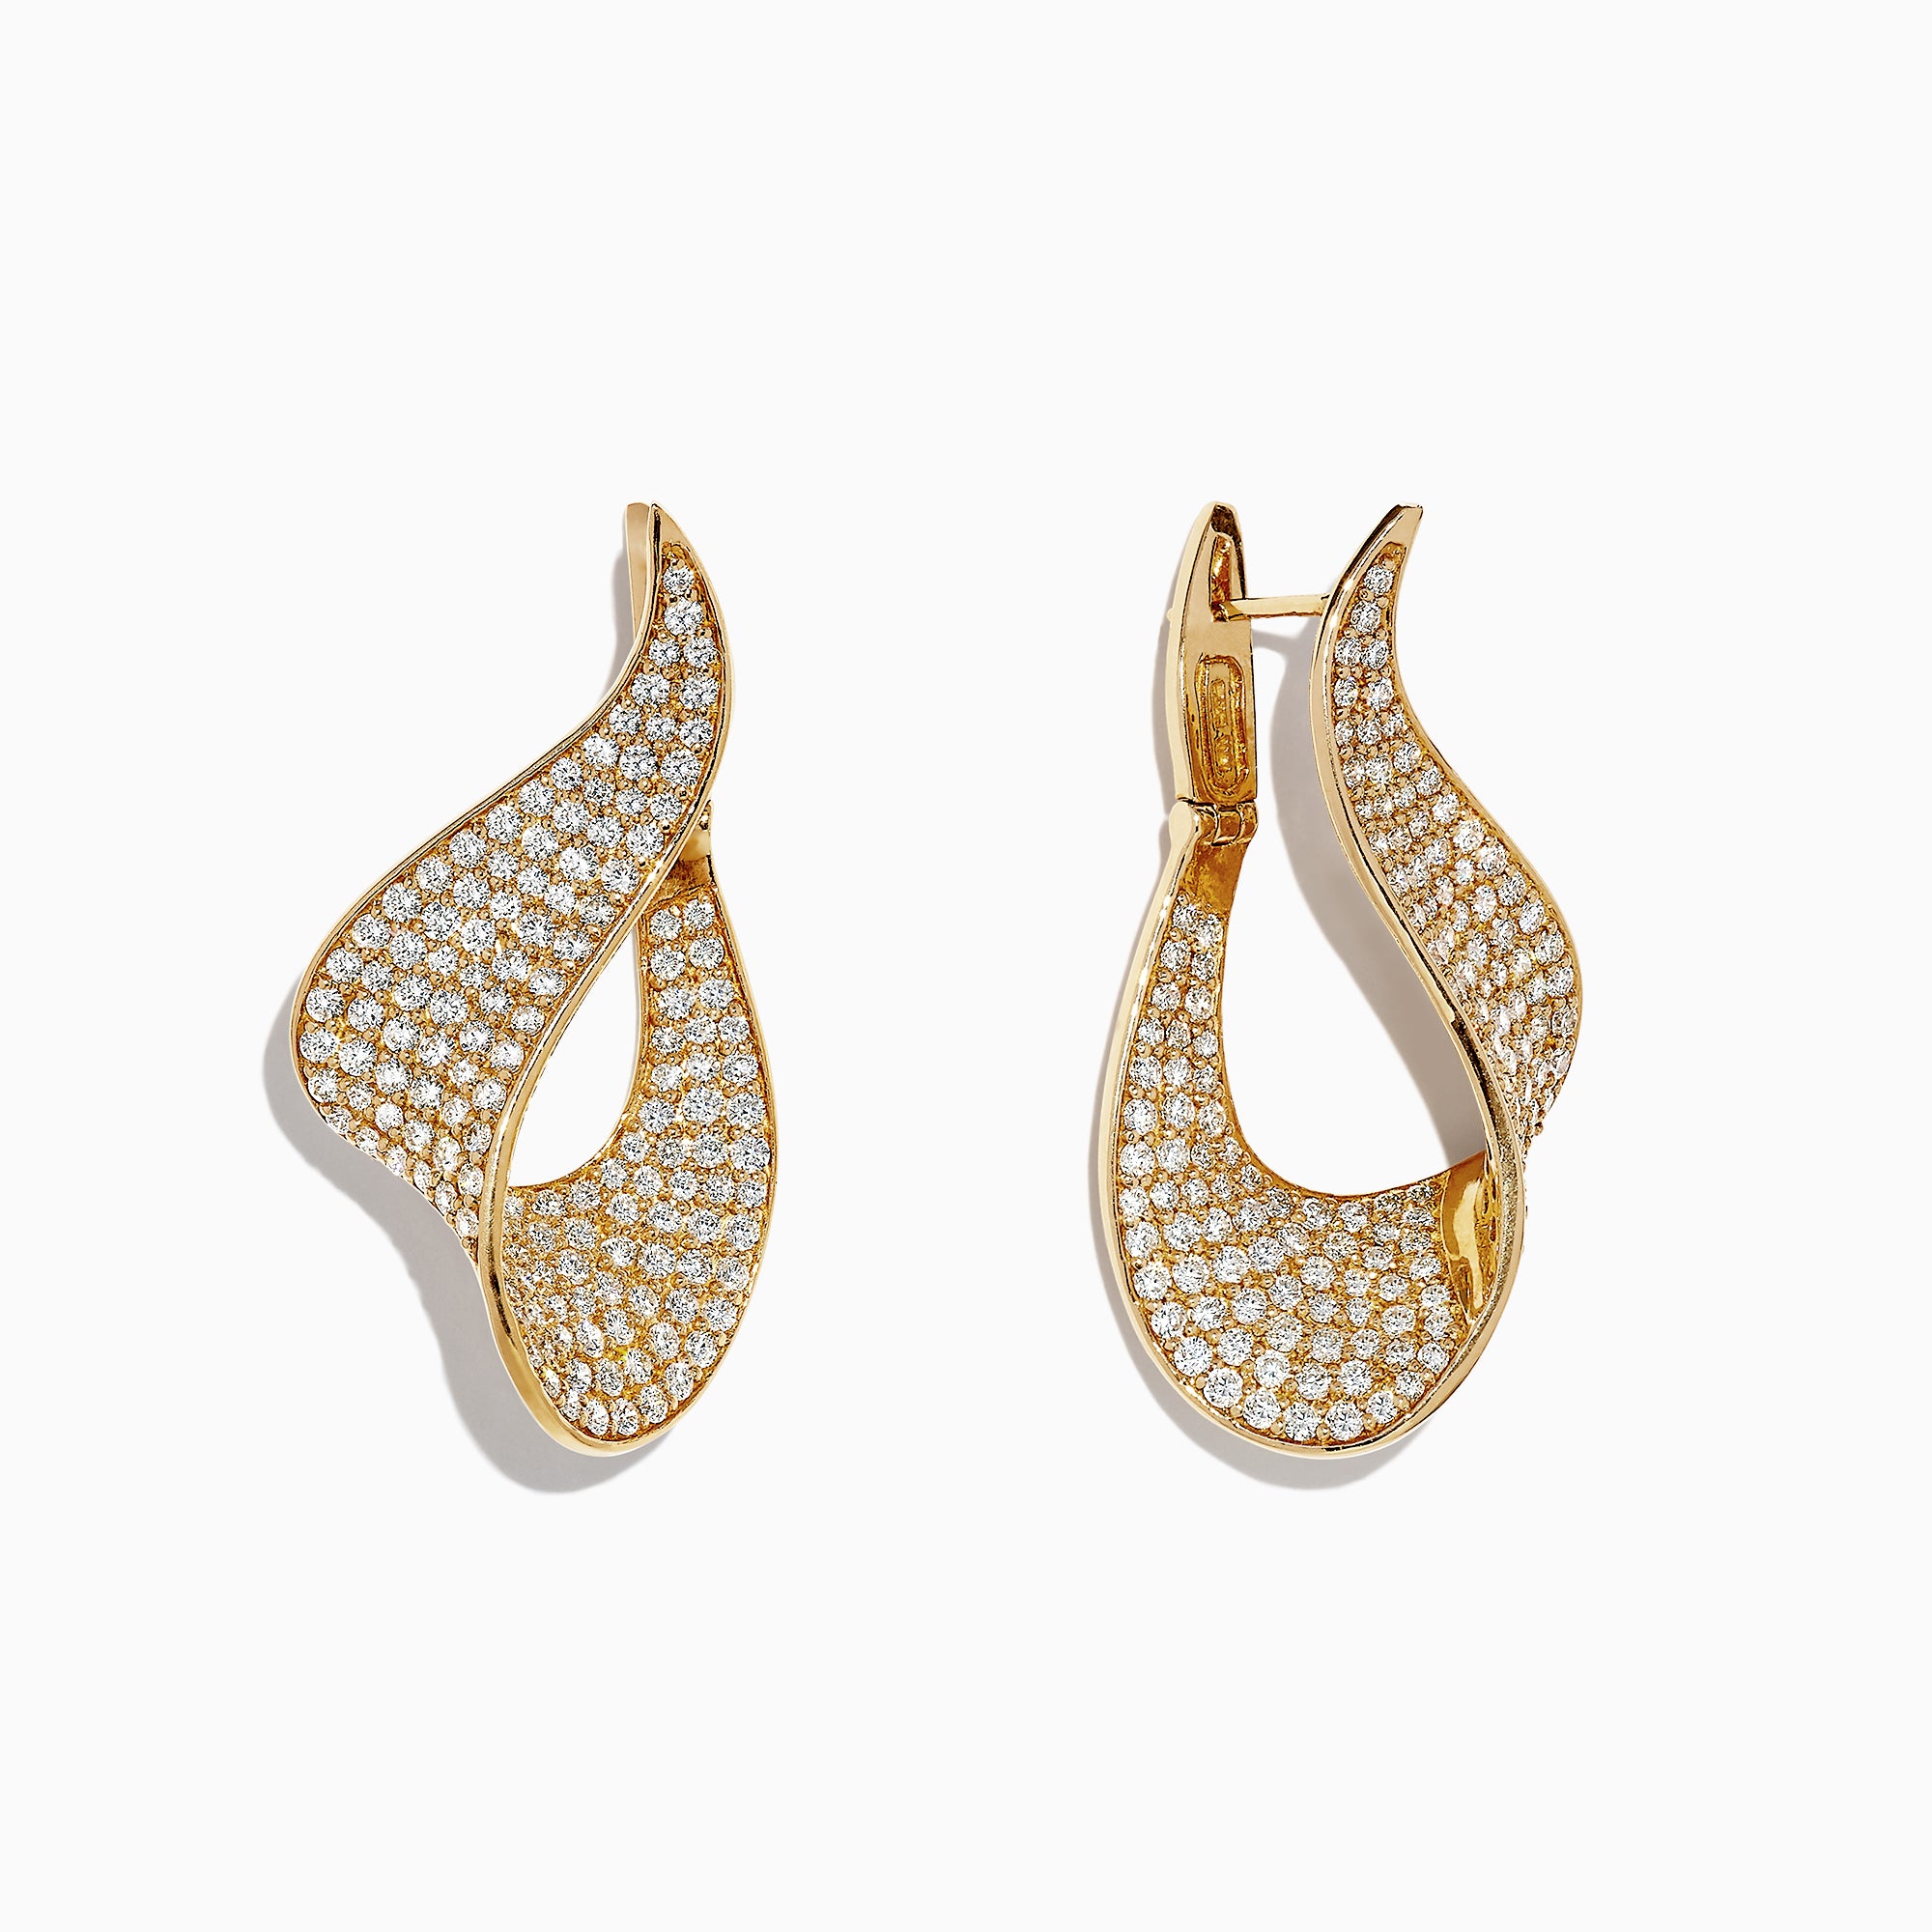 Effy D'Oro 14K Yellow Gold Diamond Hoop Earrings, 4.83 TCW